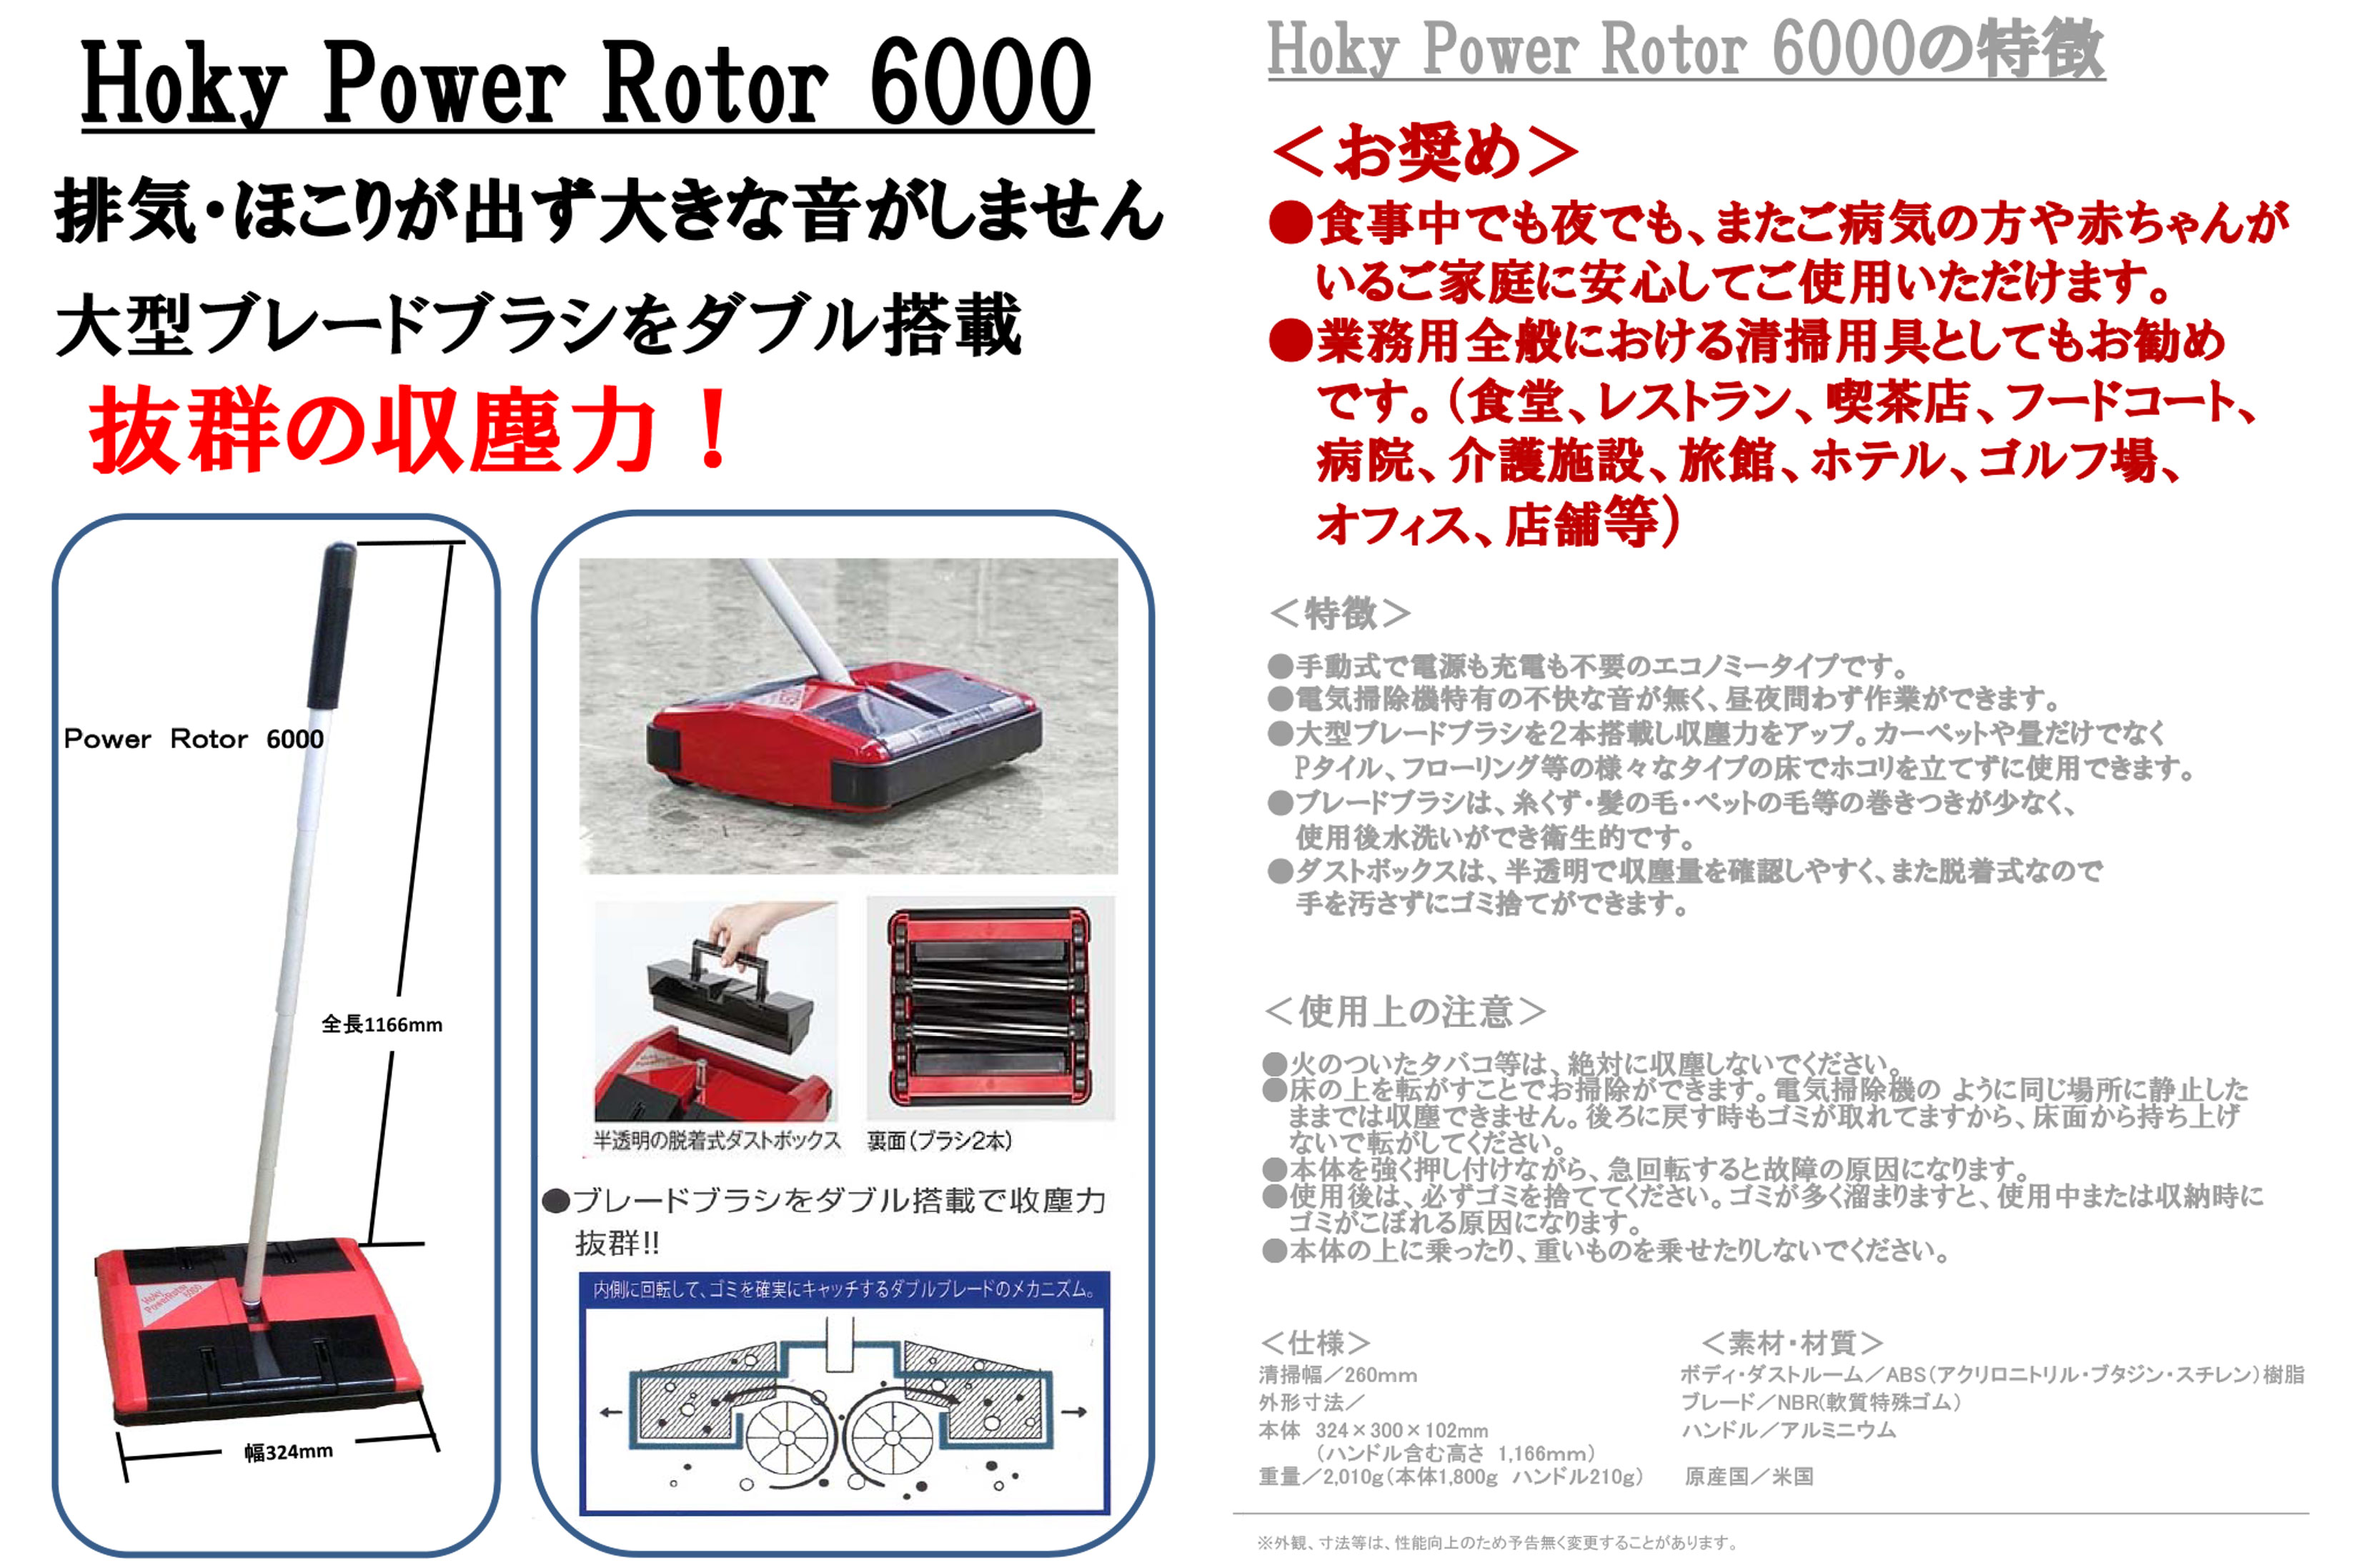 Power Rotor 6000